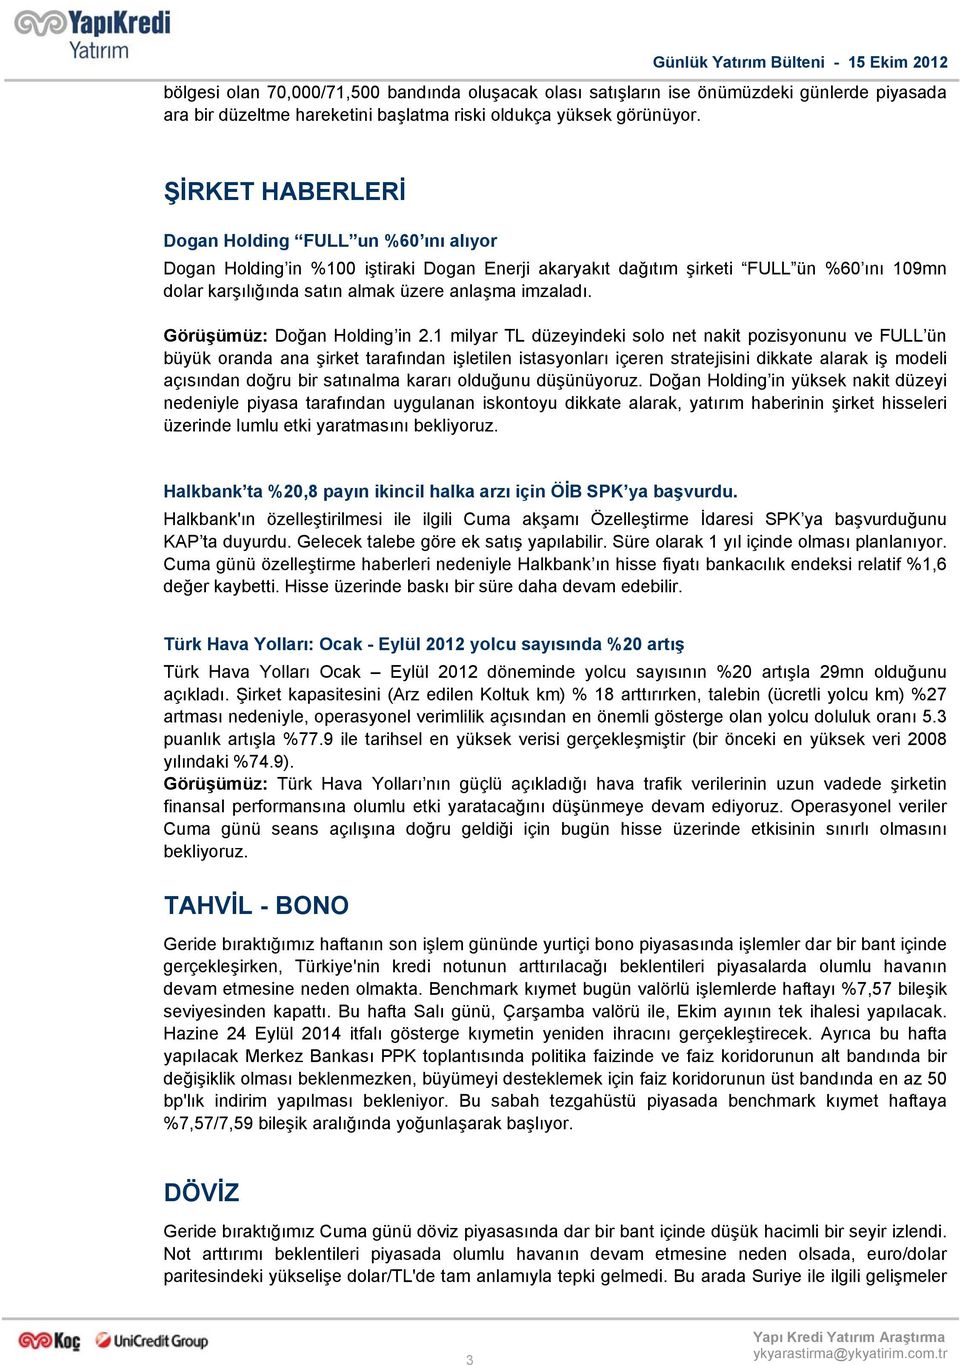 ŞİRKET HABERLERİ Dogan Holding FULL un %60 ını alıyor Dogan Holding in %100 iştiraki Dogan Enerji akaryakıt dağıtım şirketi FULL ün %60 ını 109mn dolar karşılığında satın almak üzere anlaşma imzaladı.